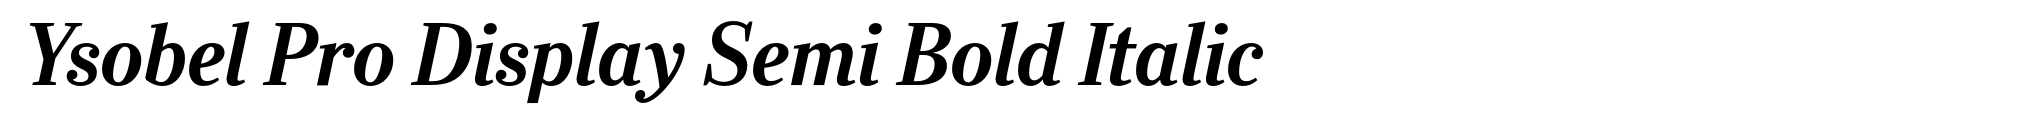 Ysobel Pro Display Semi Bold Italic image